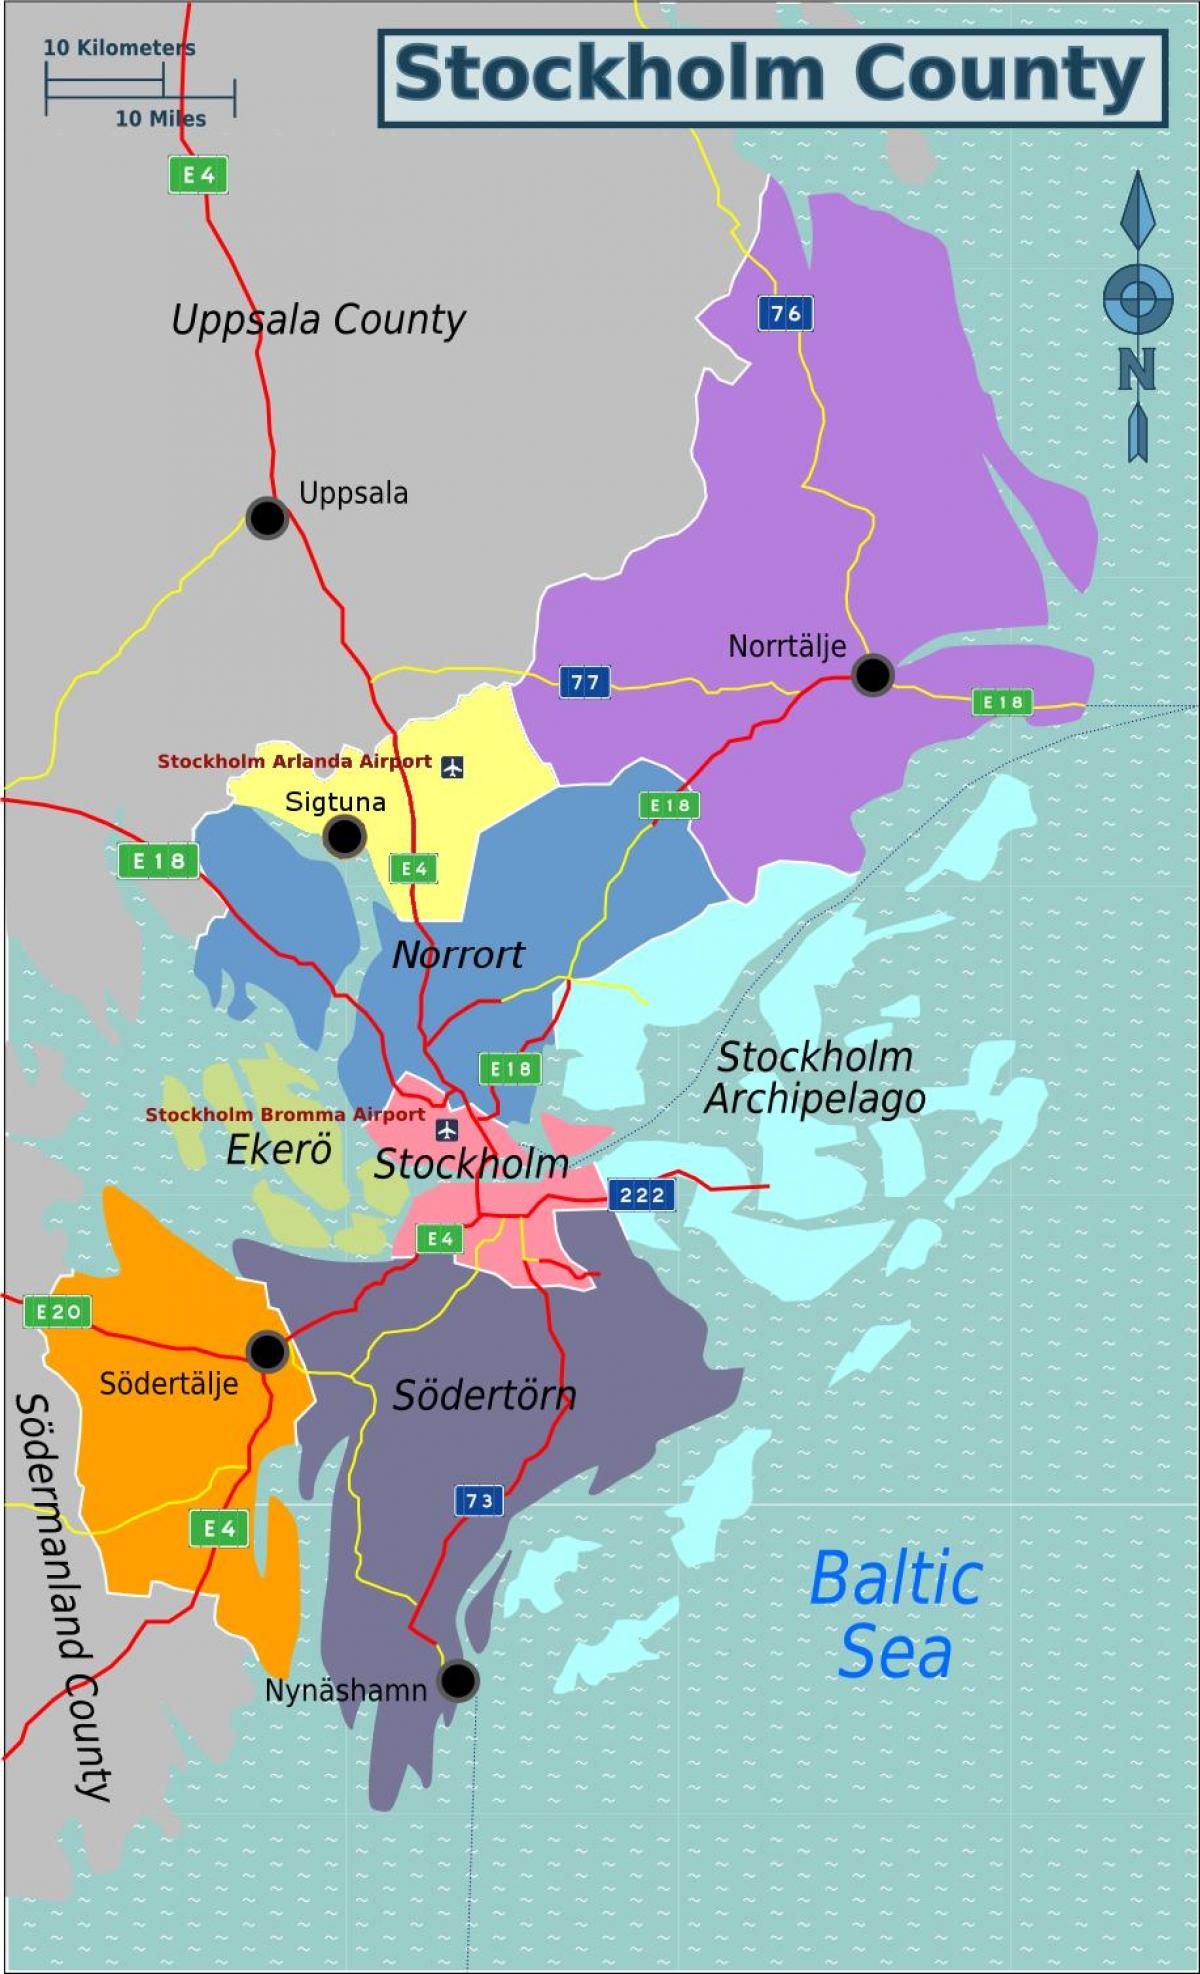 מפה של מחוז סטוקהולם